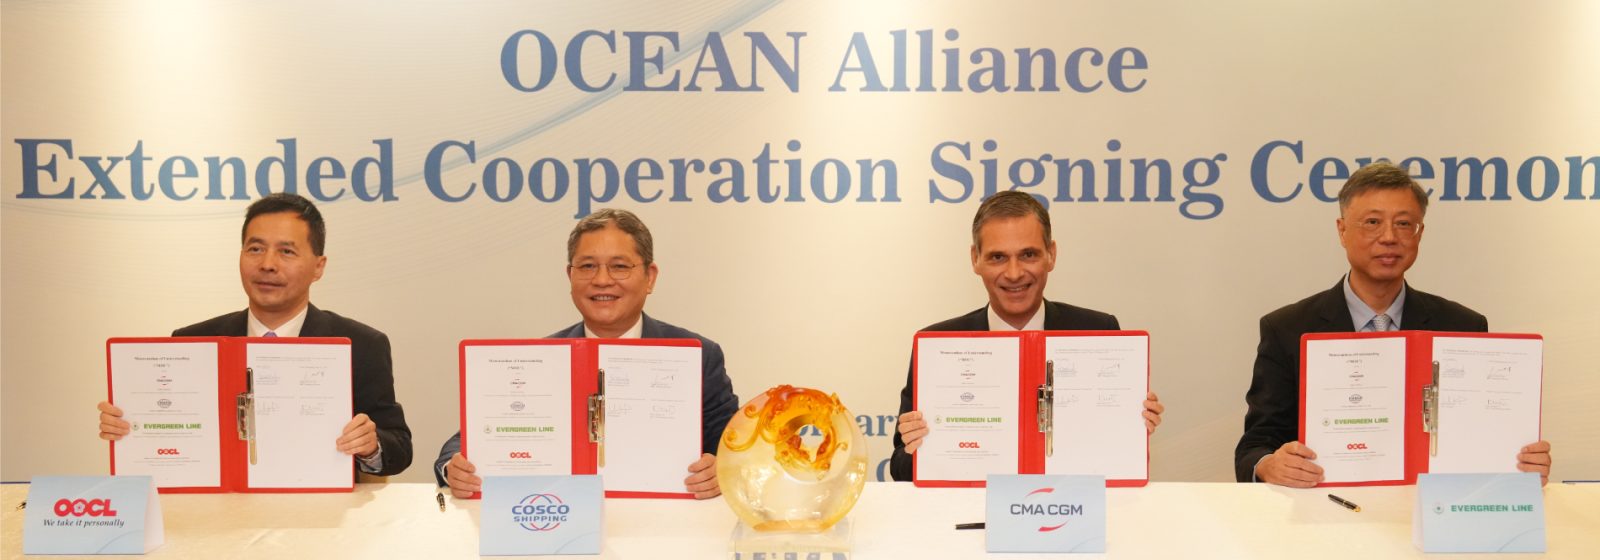 De vier leden van de Ocean Alliance tekenen een akkoord over de verlenging tot 2032.